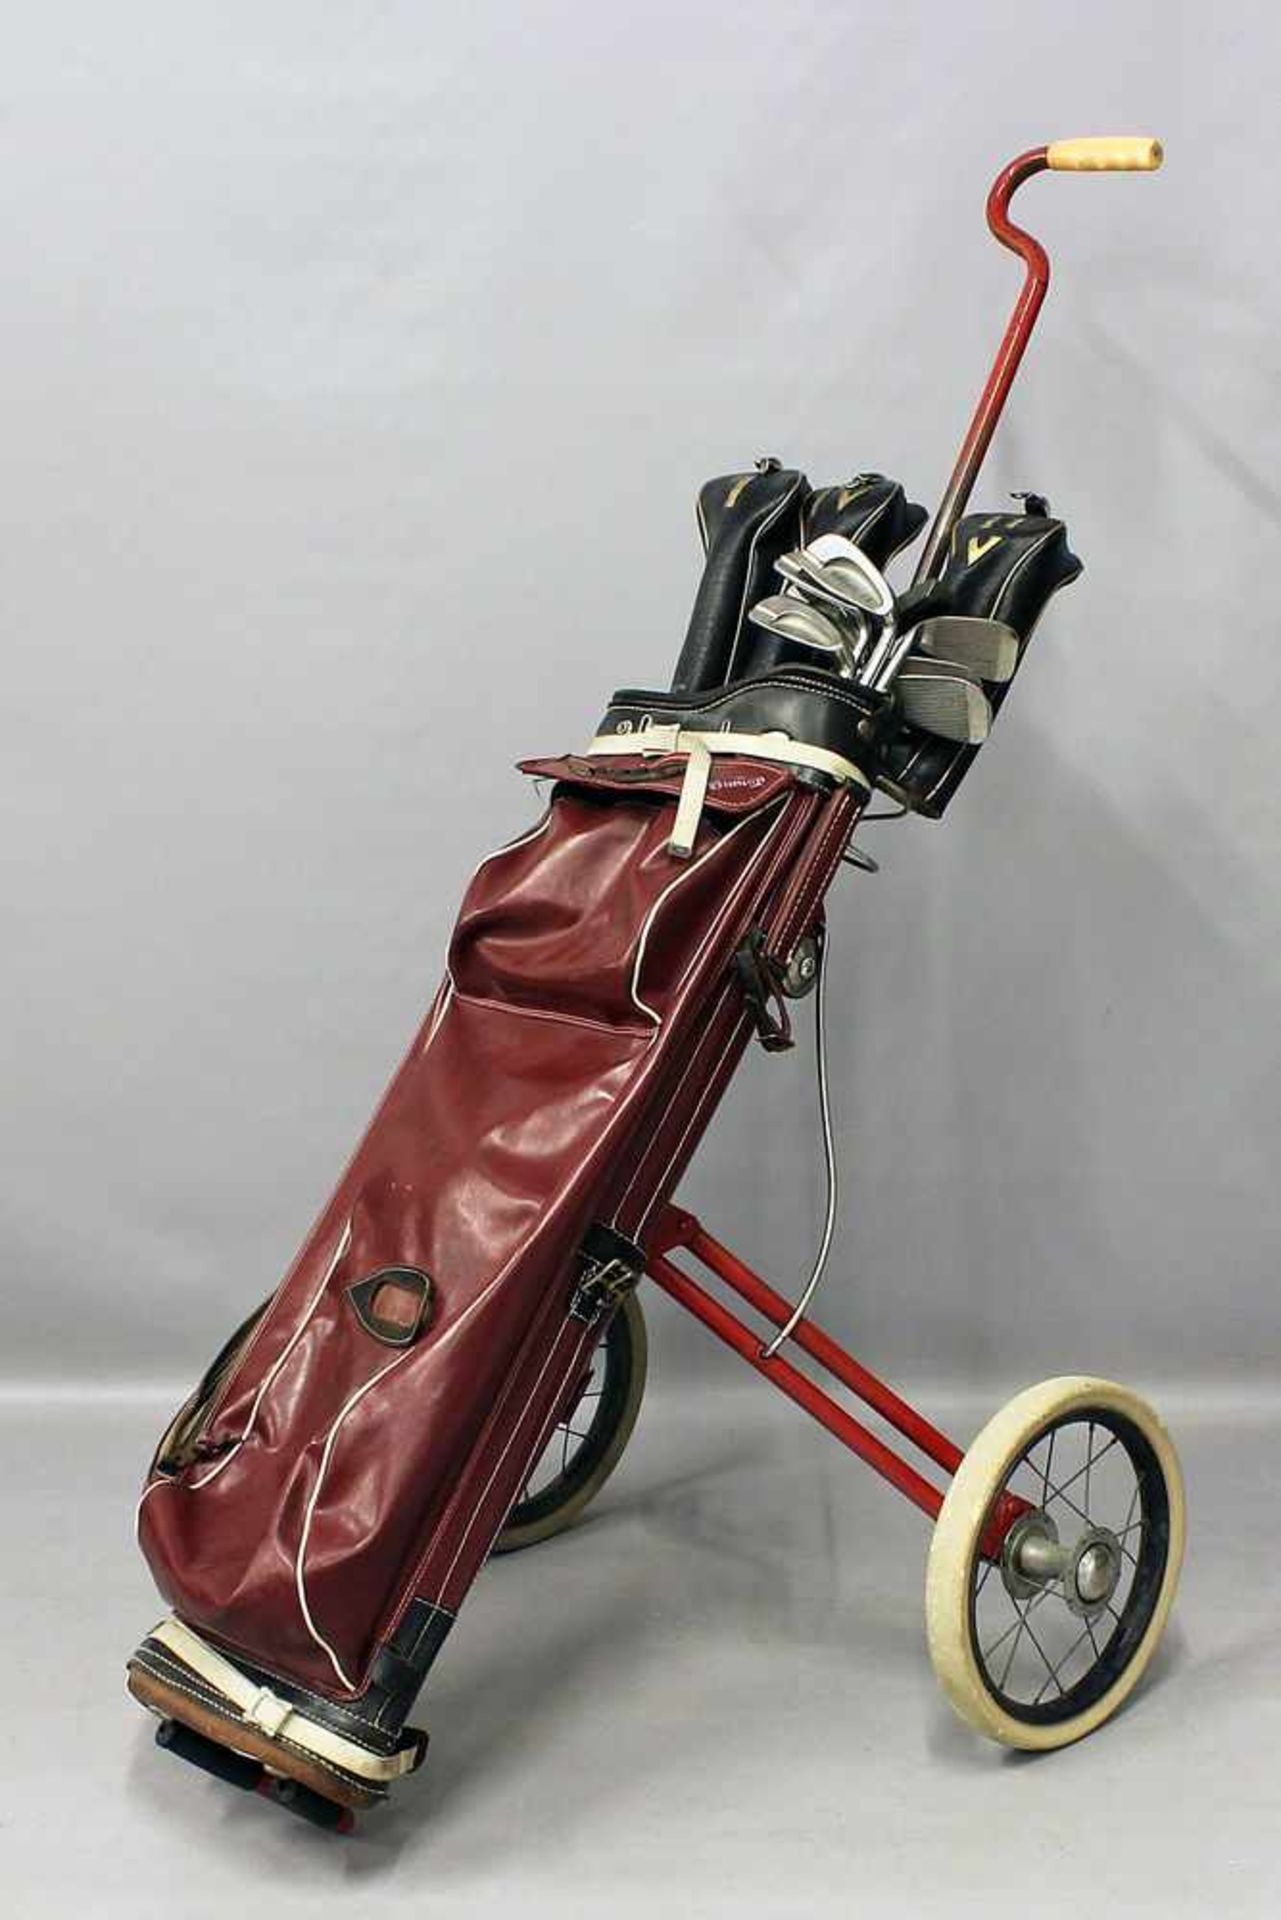 Golf-Caddy mit zwölf Schlägern.Caddy der Marke Dunlop mit Ledertasche; neun Eisen- und drei